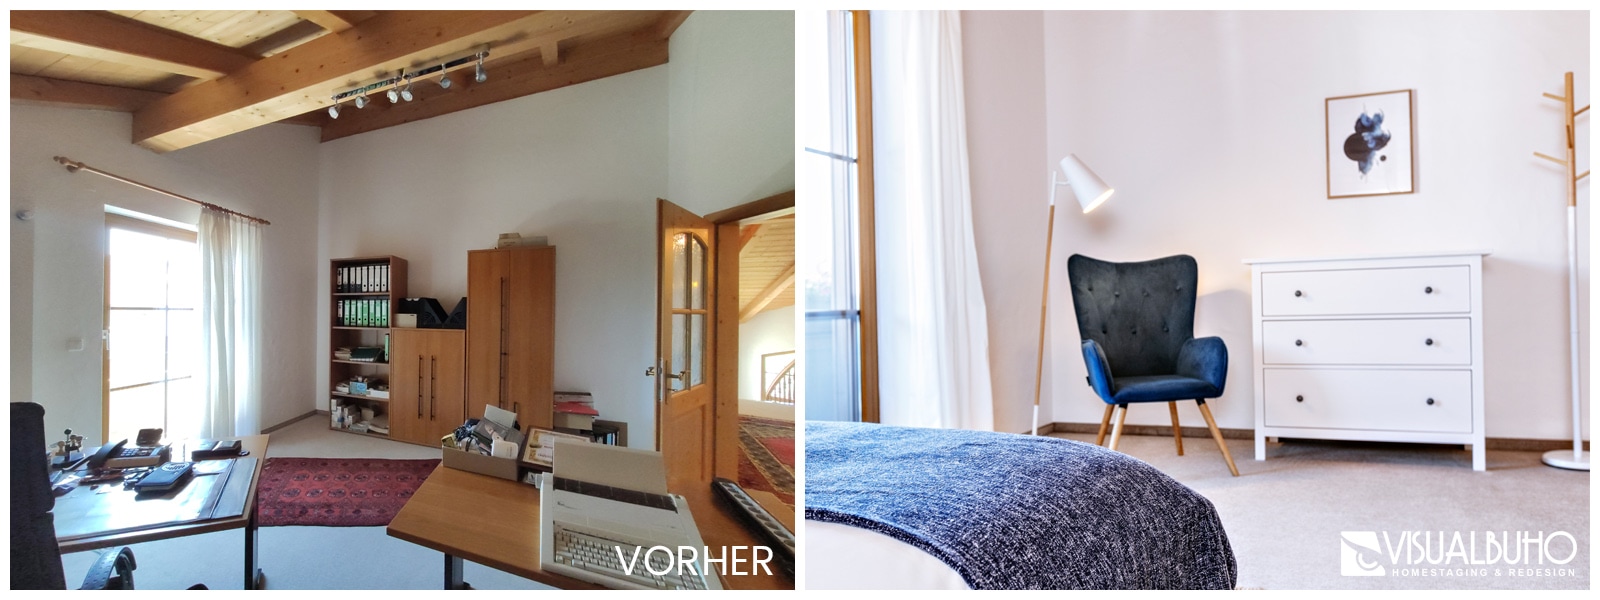 Schlafzimmer mit Sitzecke Ferienhaus Lechbruck Vergleichsbild